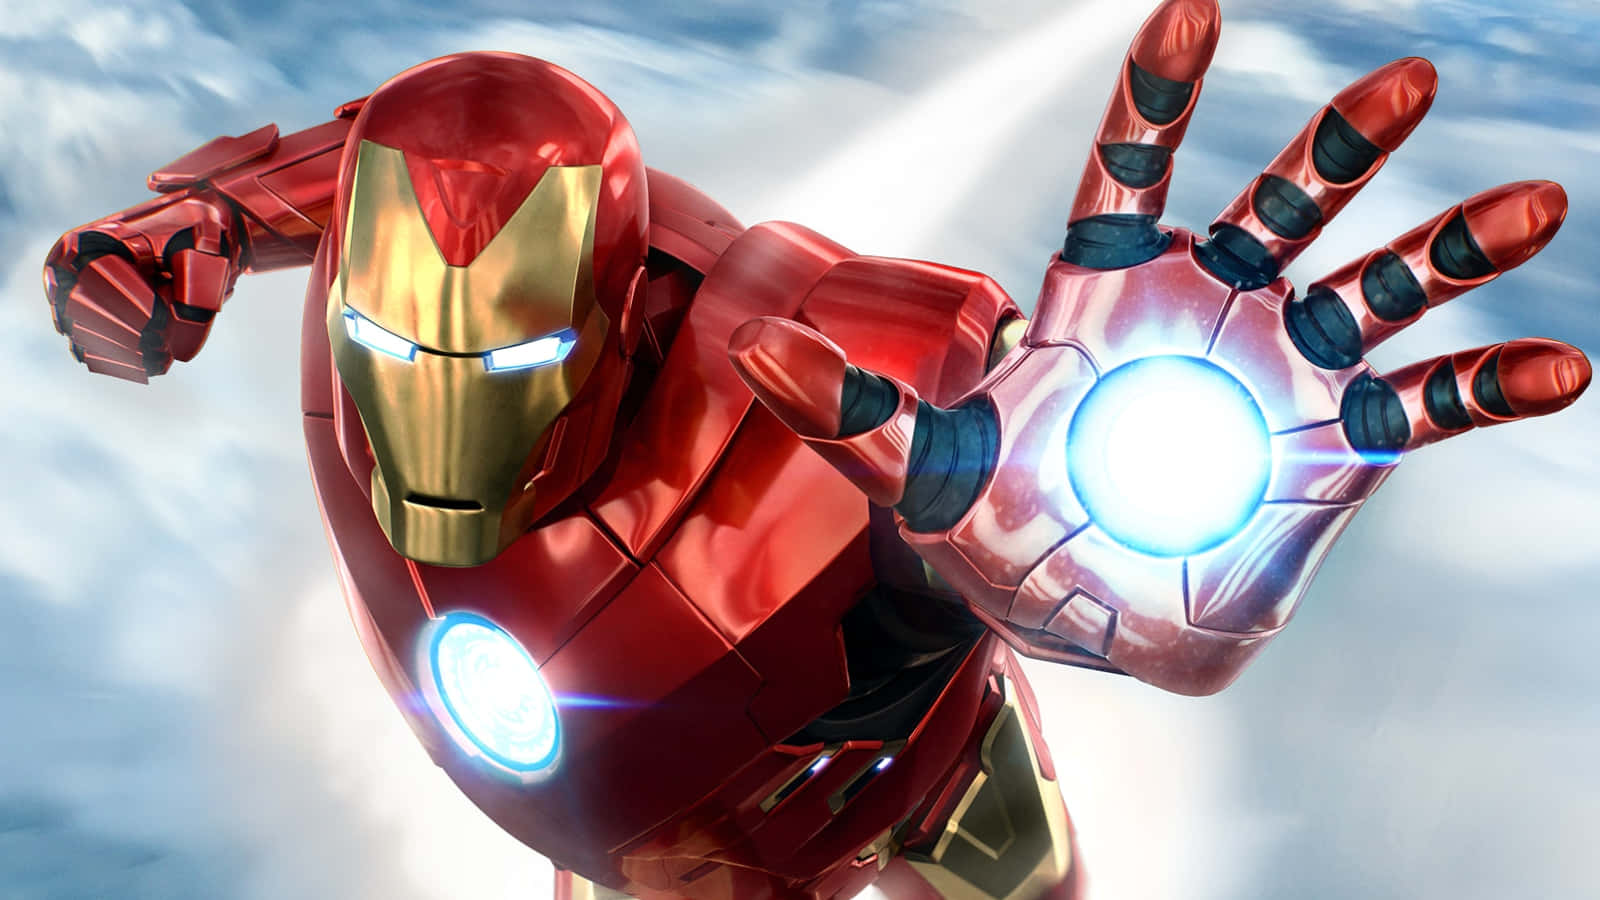 Bildvon Iron Man, Der Im Himmel Mit Leuchtender Hand Fliegt.